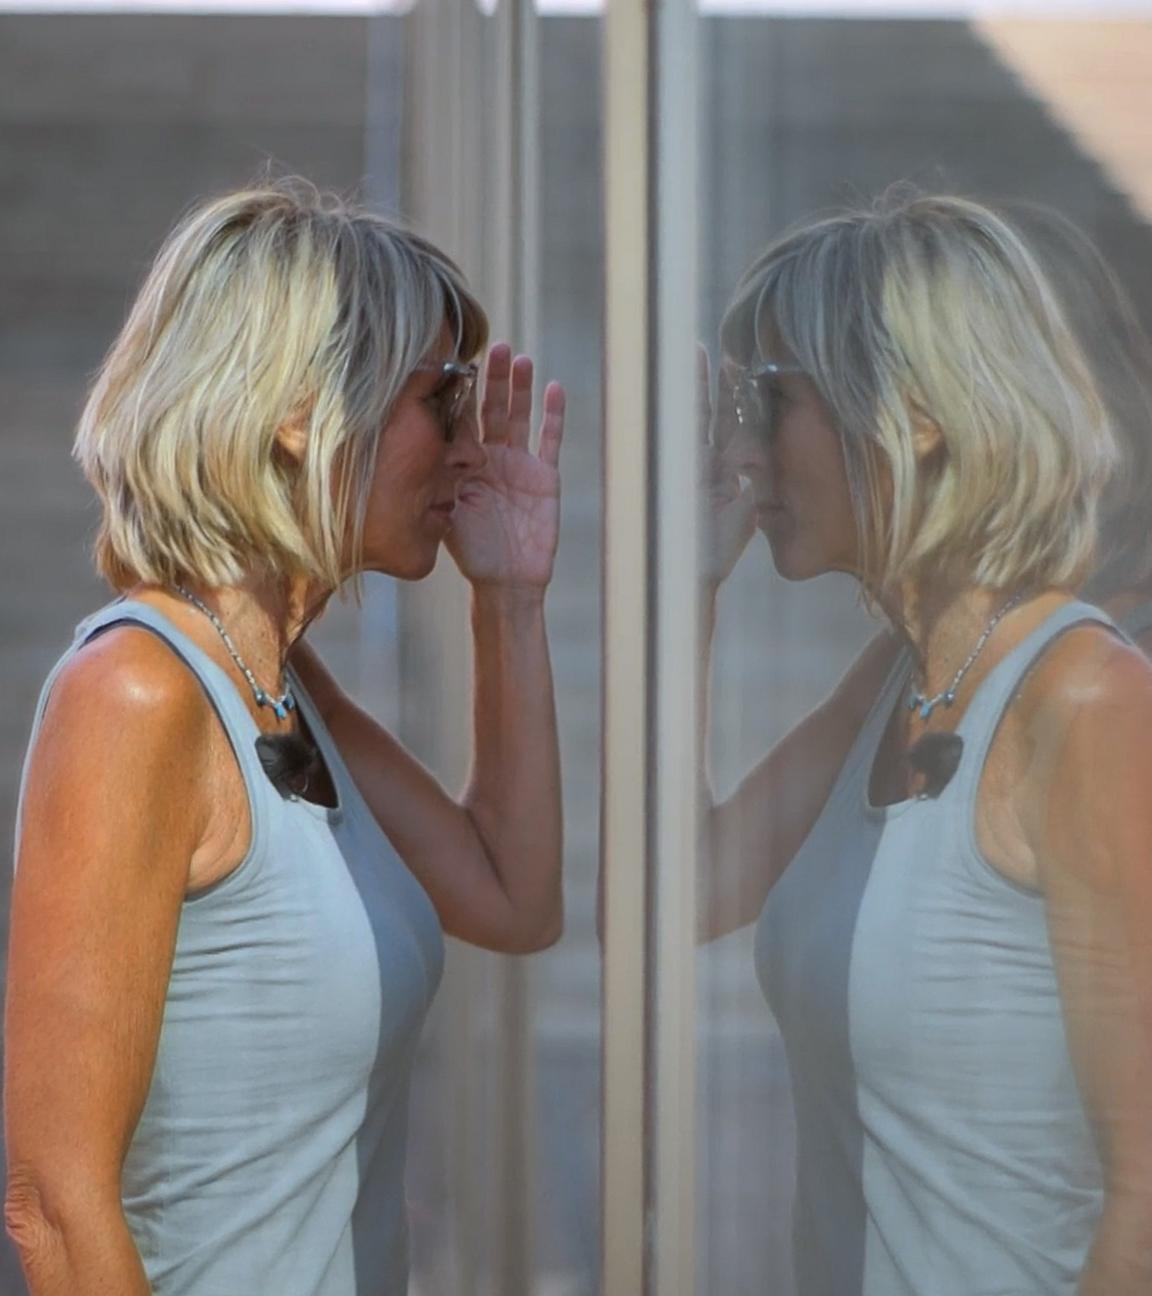 Steffi, eine sportlich schlanke Frau mit schulterlangen blonden Haaren steht an einer Glasscheibe und schaut hinein. Sie trägt eine Sonnenbrille und ein blaues Tank-Top. Neben ihr ist ihr Spiegelbild zu sehen.